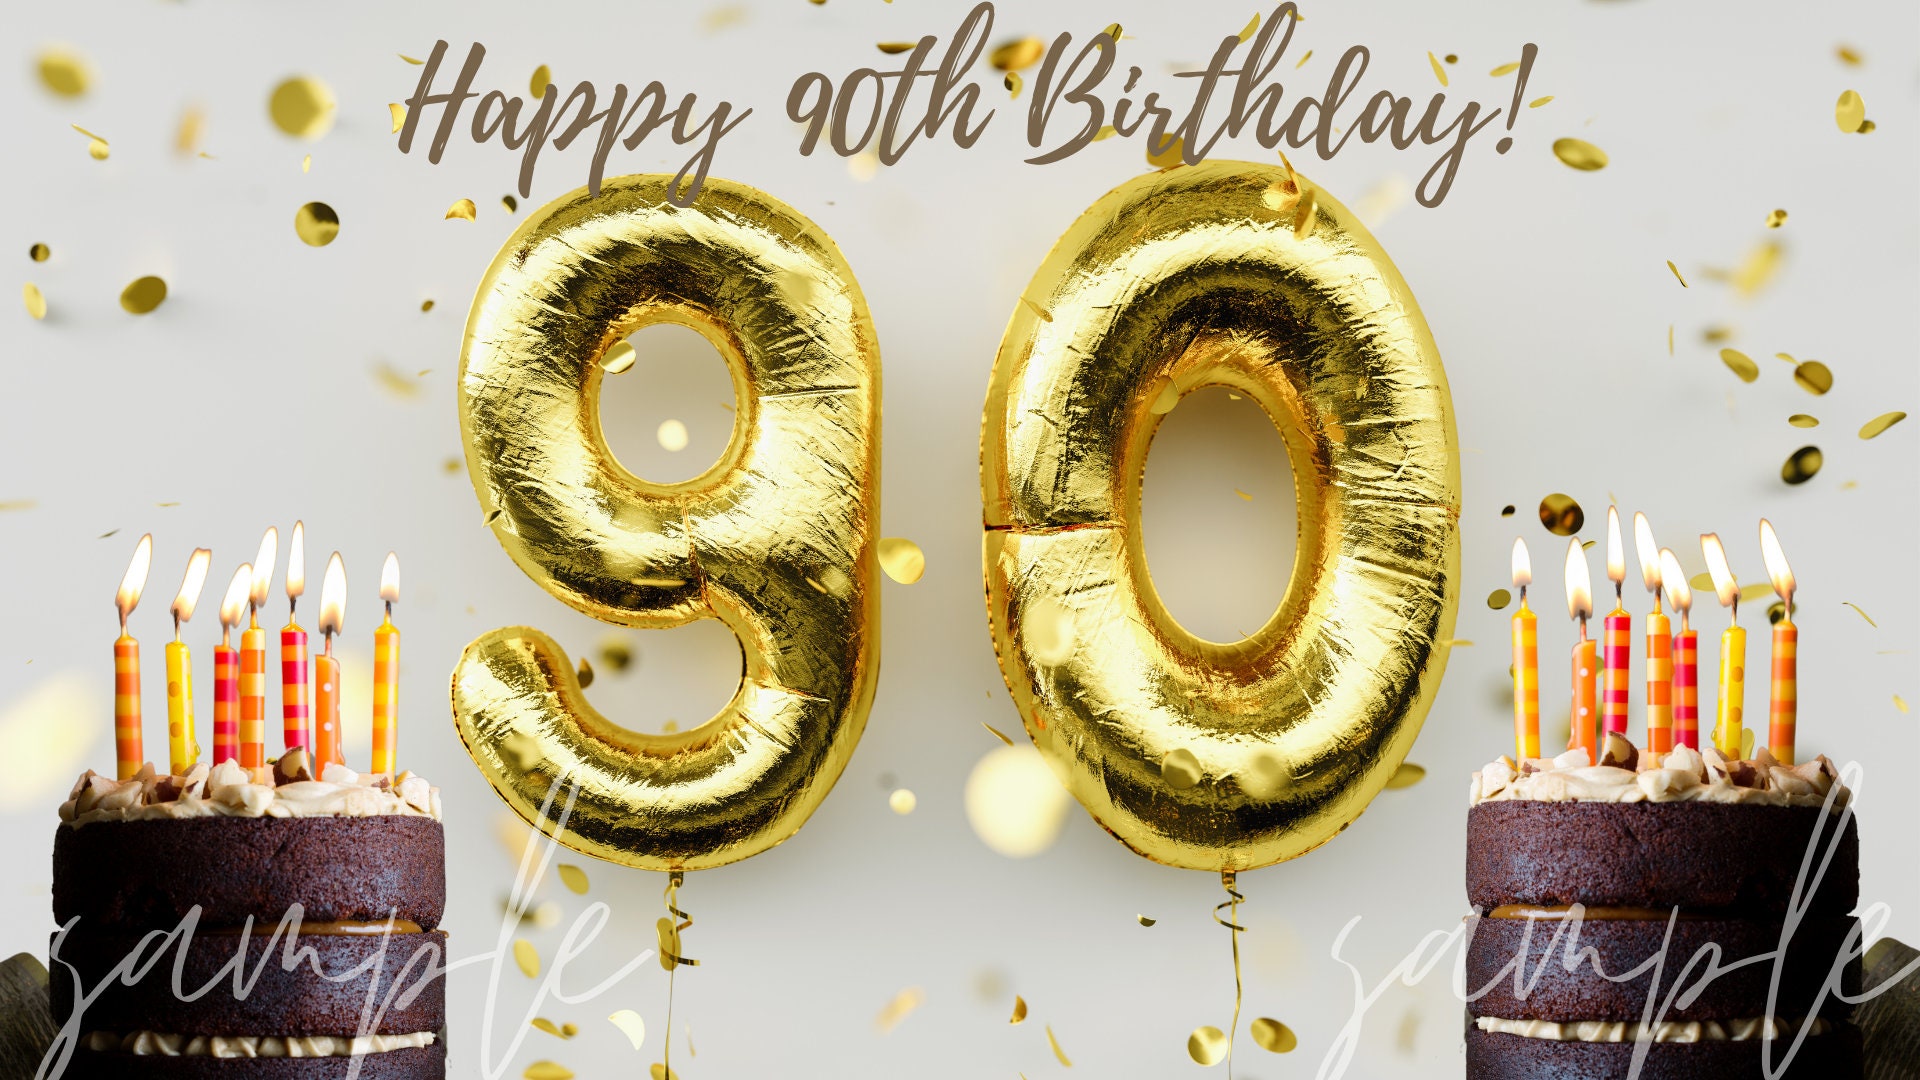 Happy 90th Birthday Background